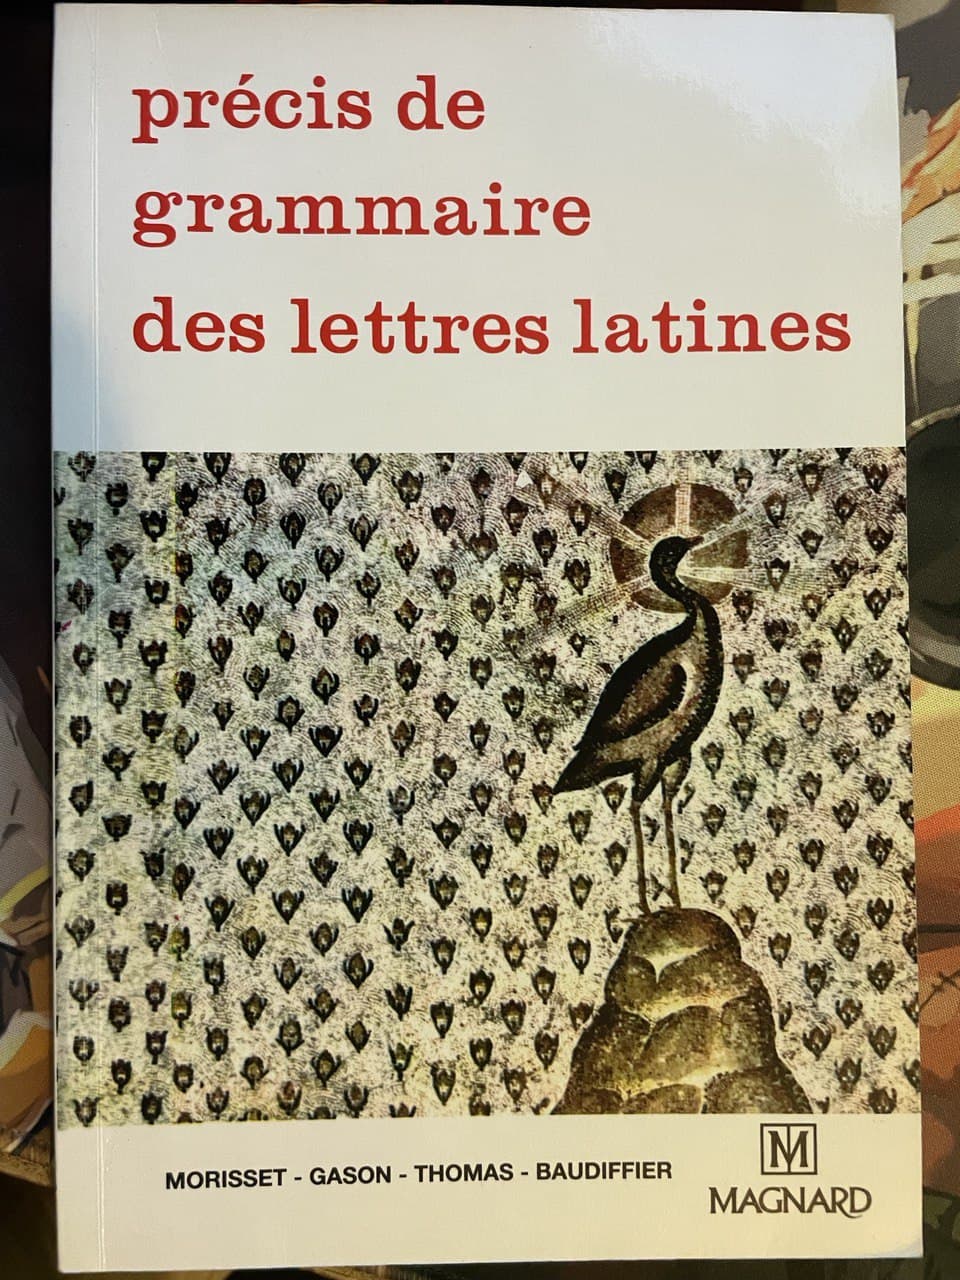 precis-de-grammaire-latines-23bae90e